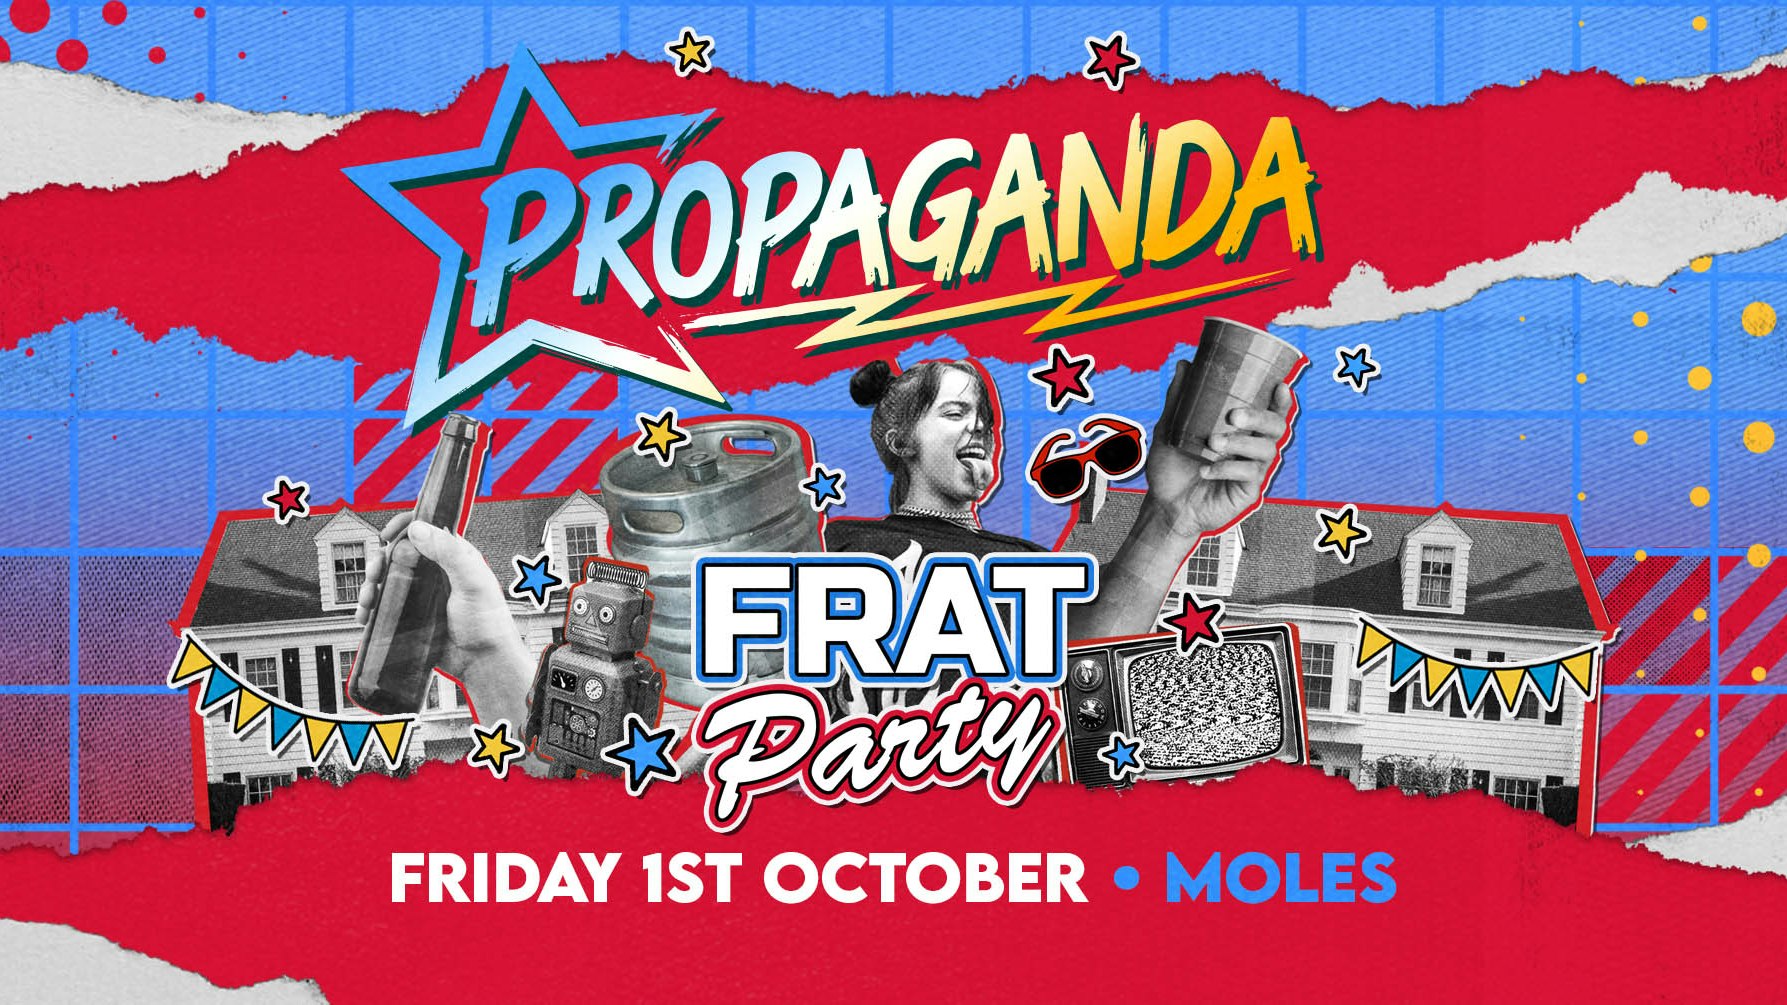 Propaganda Bath – Frat Party!